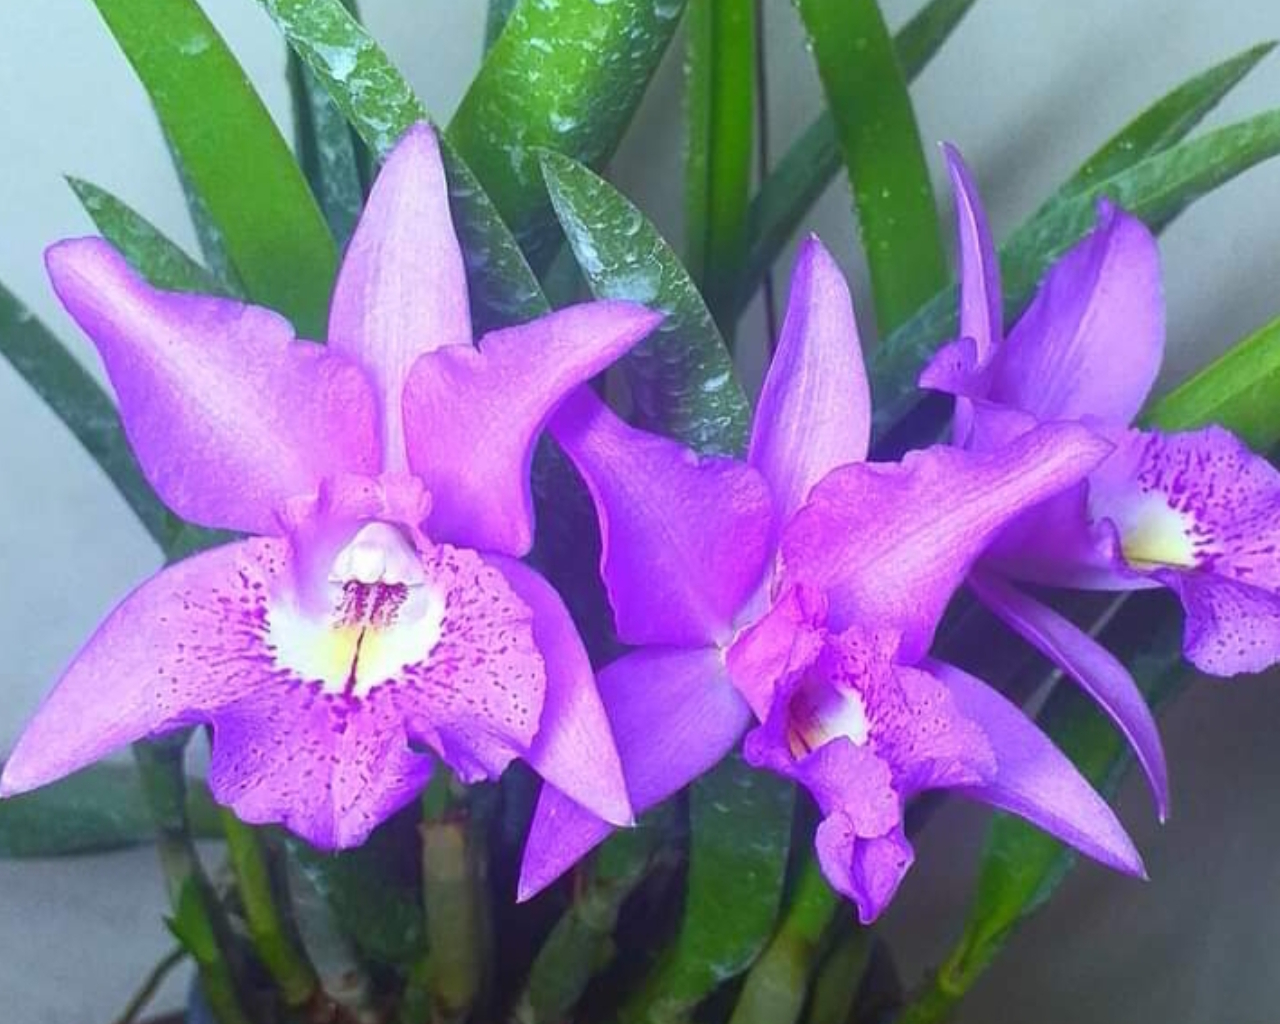 വലിയ colourful ആയ flowers തരുന്ന ഓർക്കിഡ് ആണിത്.ക്വീൻ of orchids എന്നും അറിയപ്പെടുന്നു.